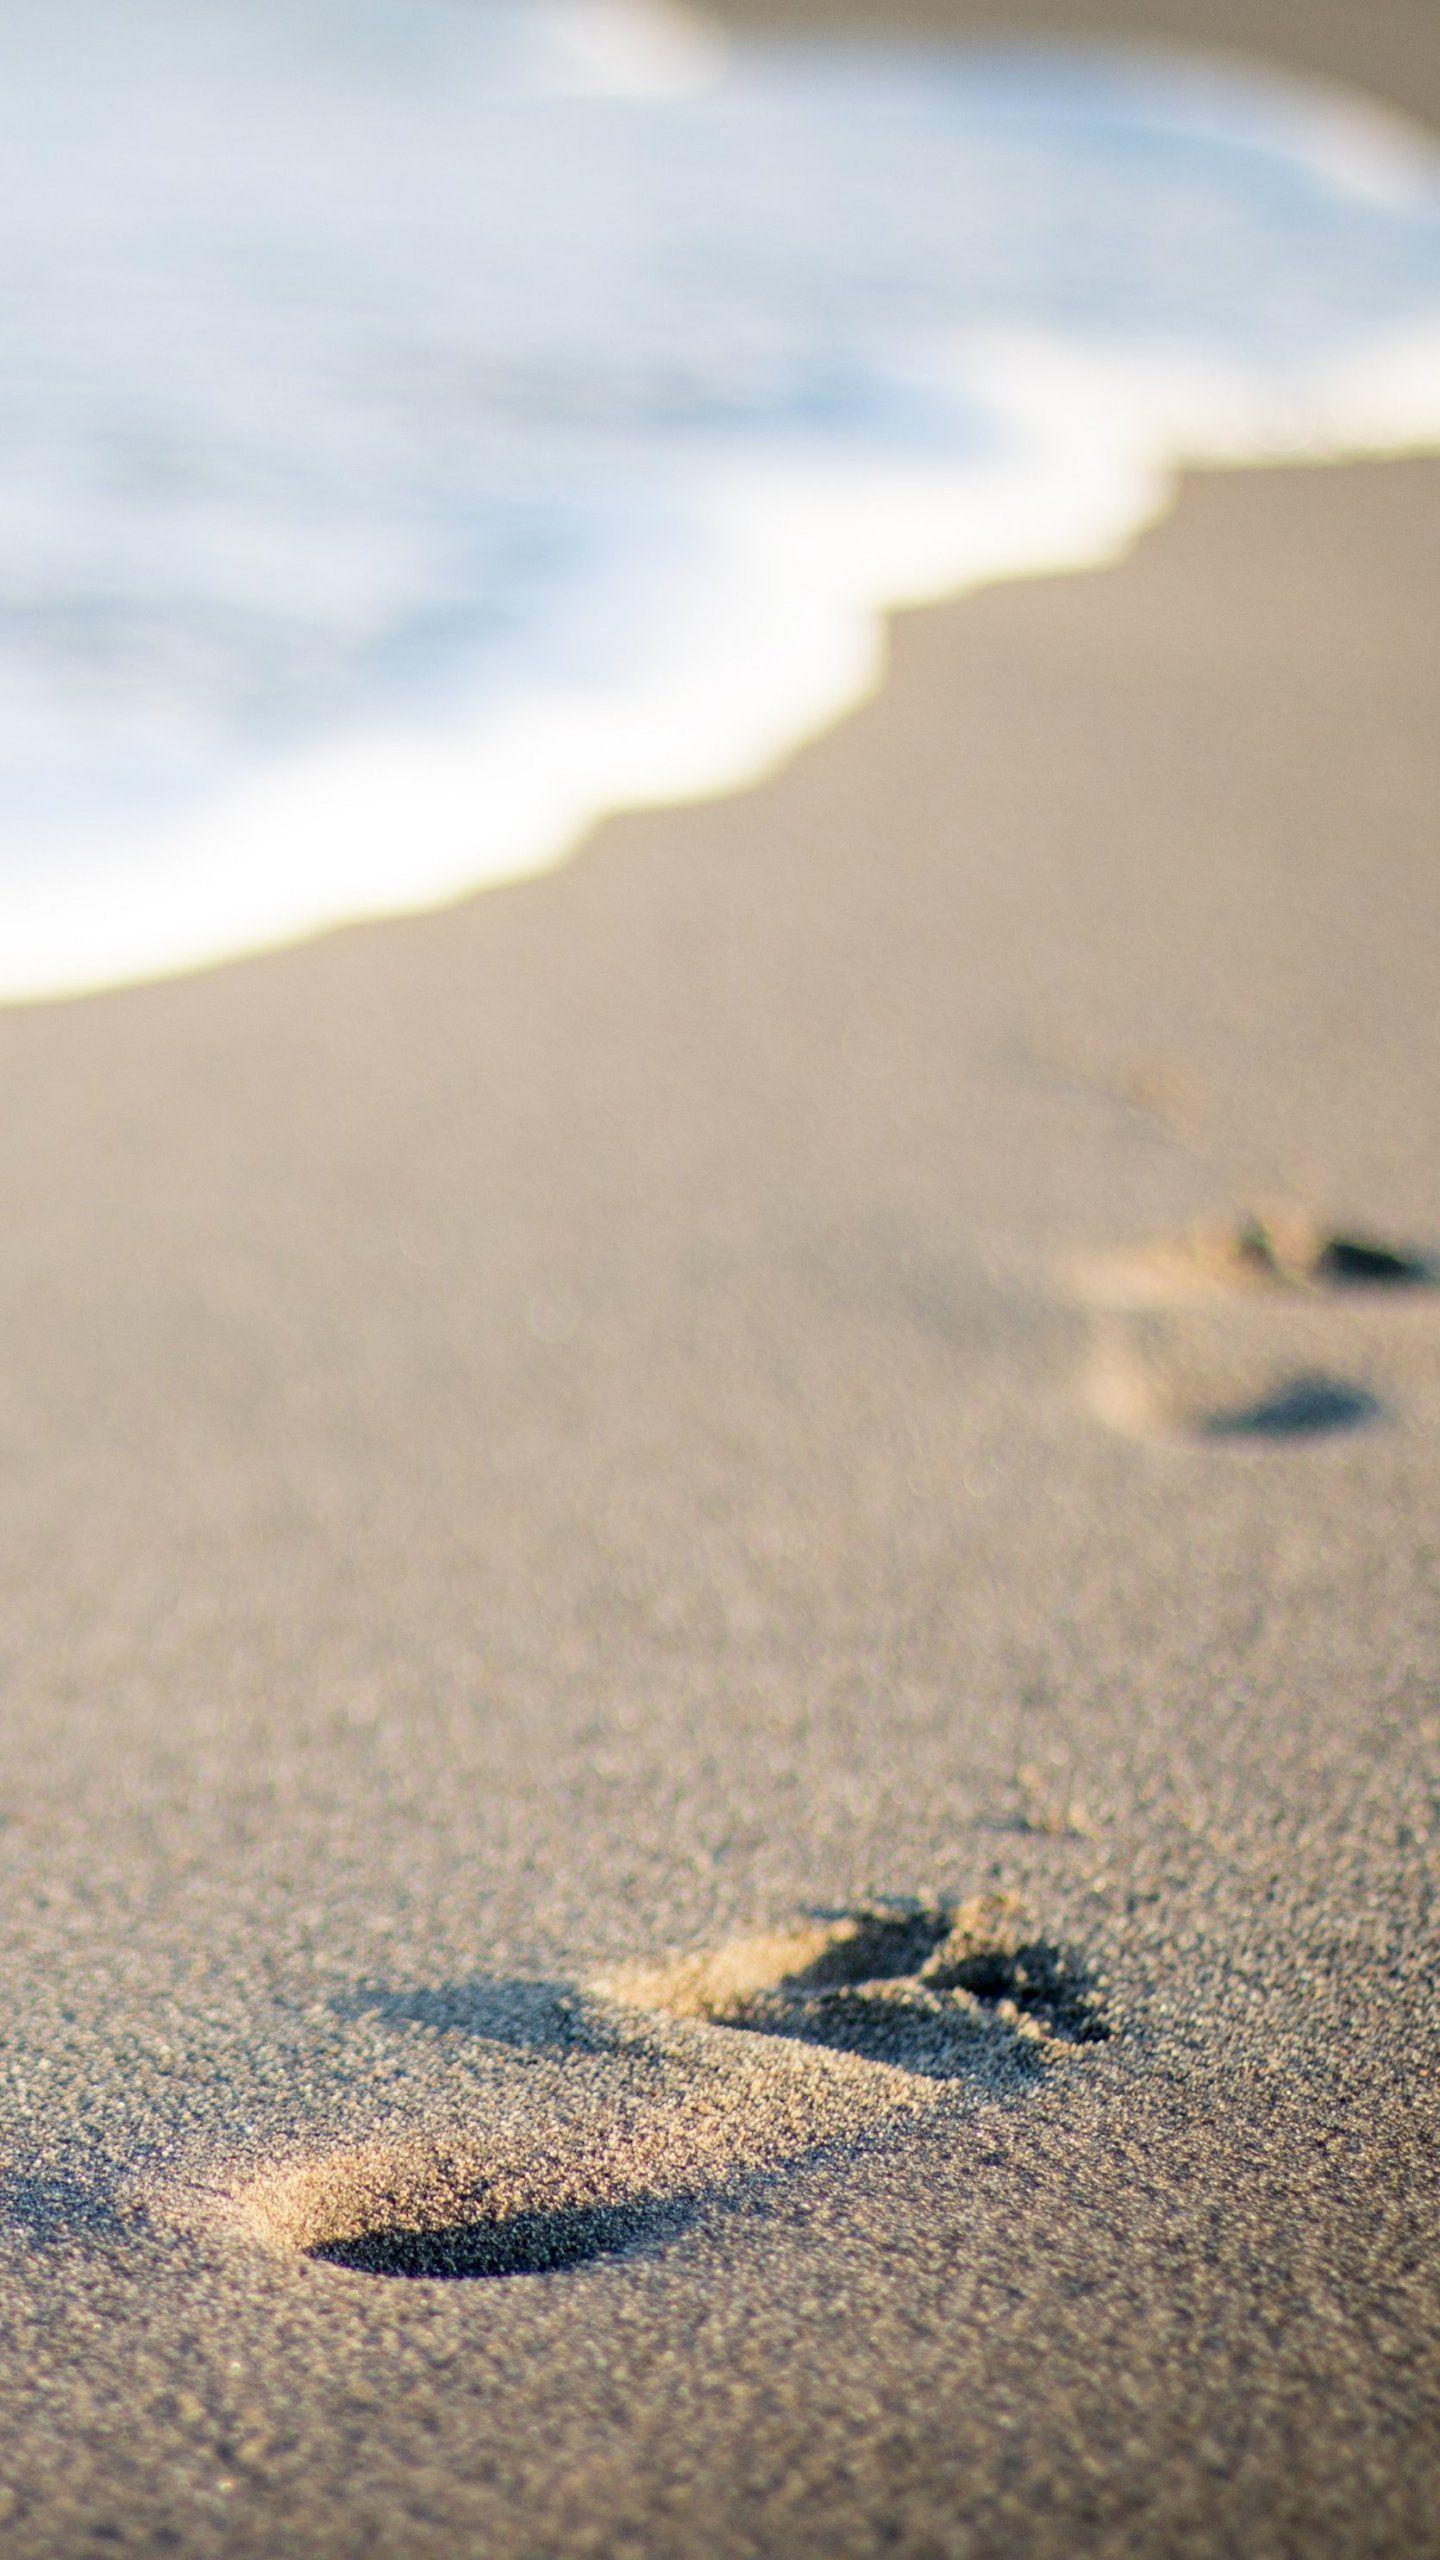 Footsteps in Sand Wallpaper, Android & Desktop Background